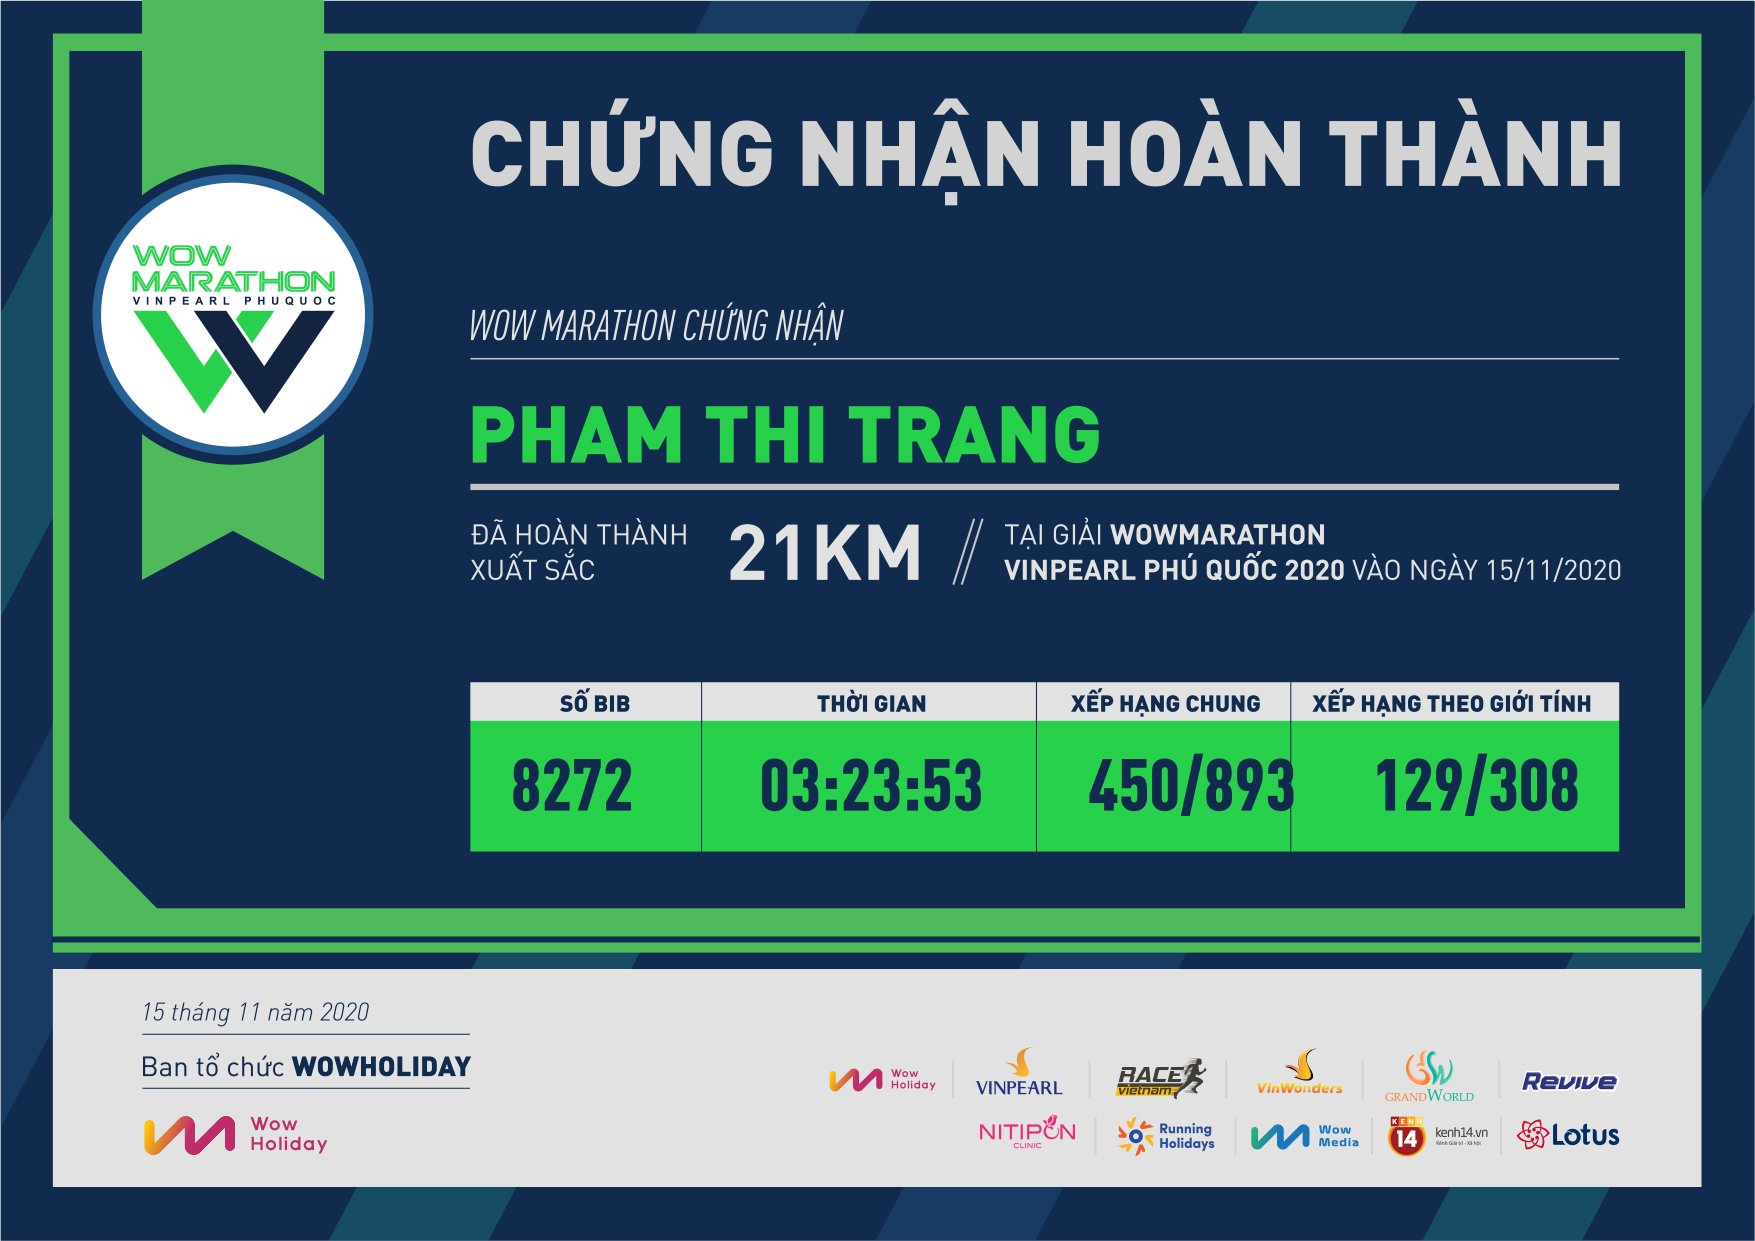 8272 - Pham Thi Trang